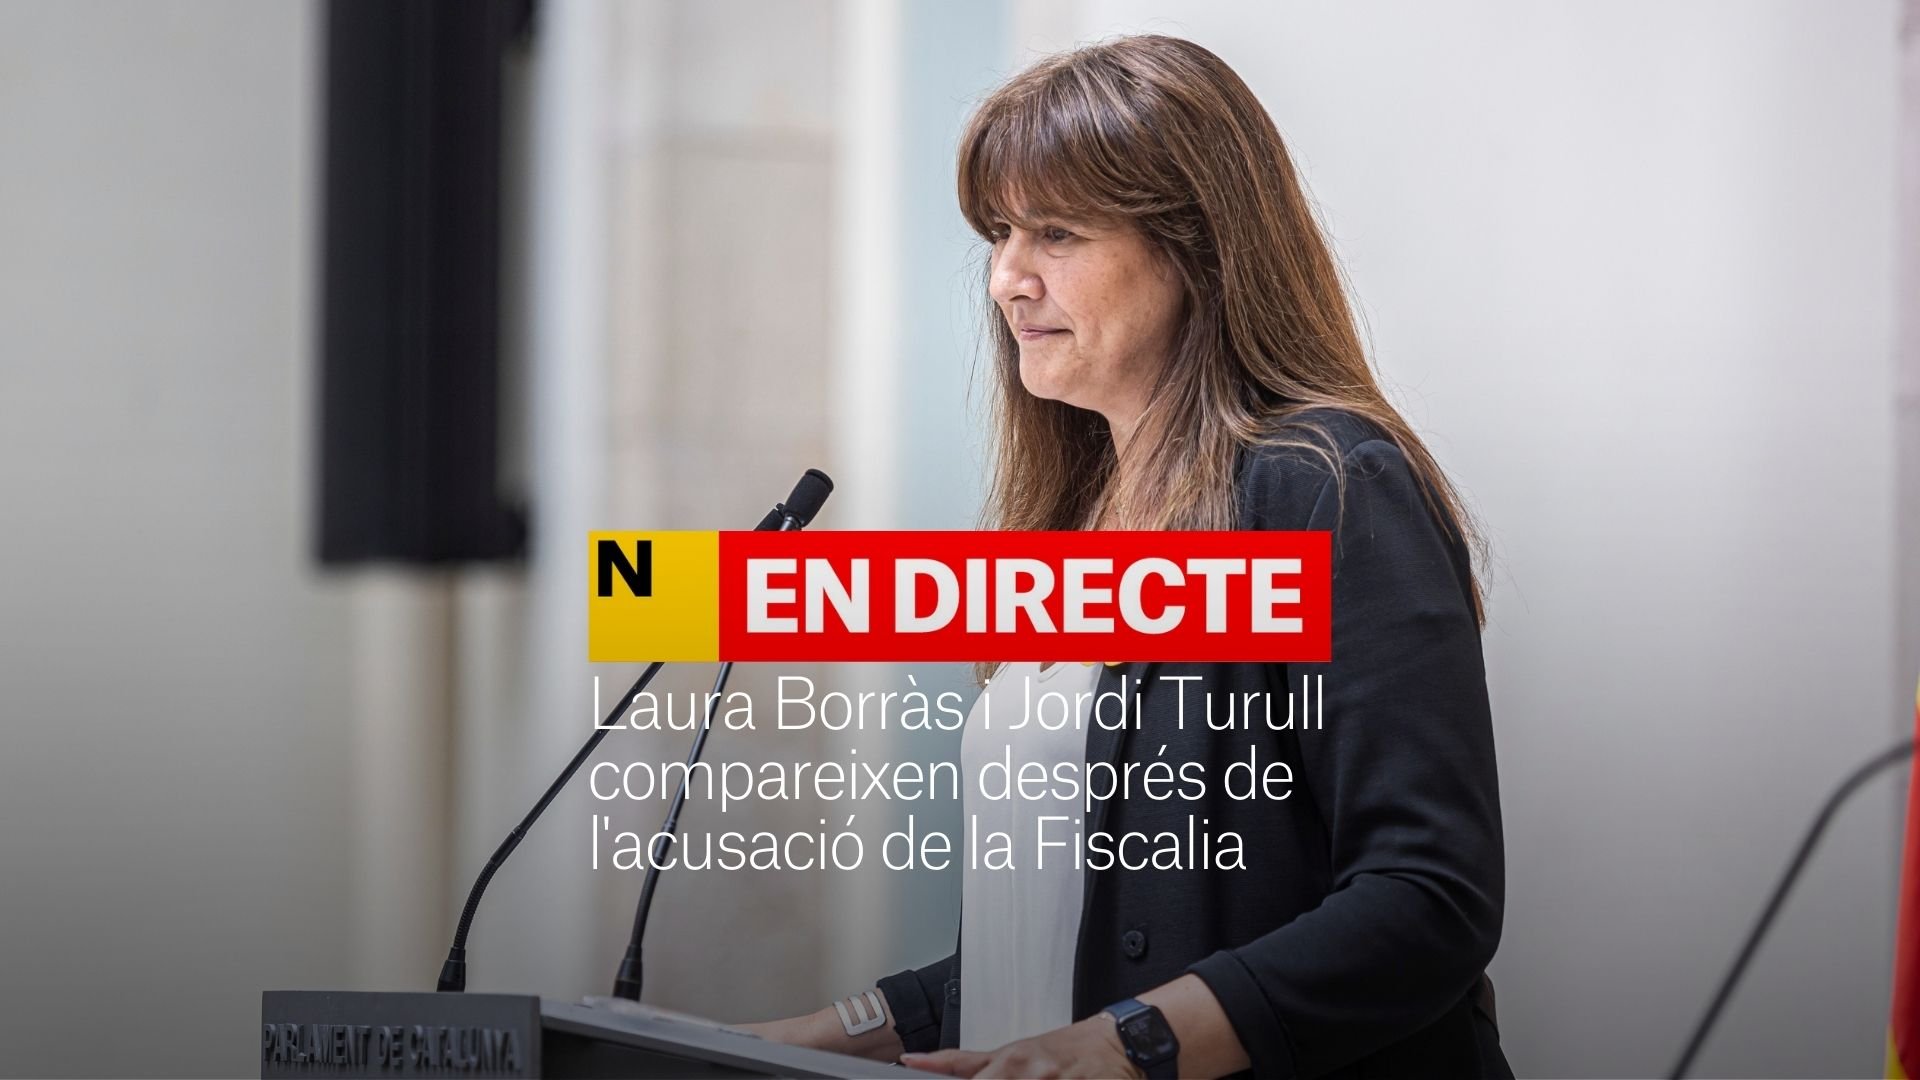 Laura Borràs, después de la petición de prisión de la Fiscalía: "No dimitiré de mi cargo" | DIRECTO